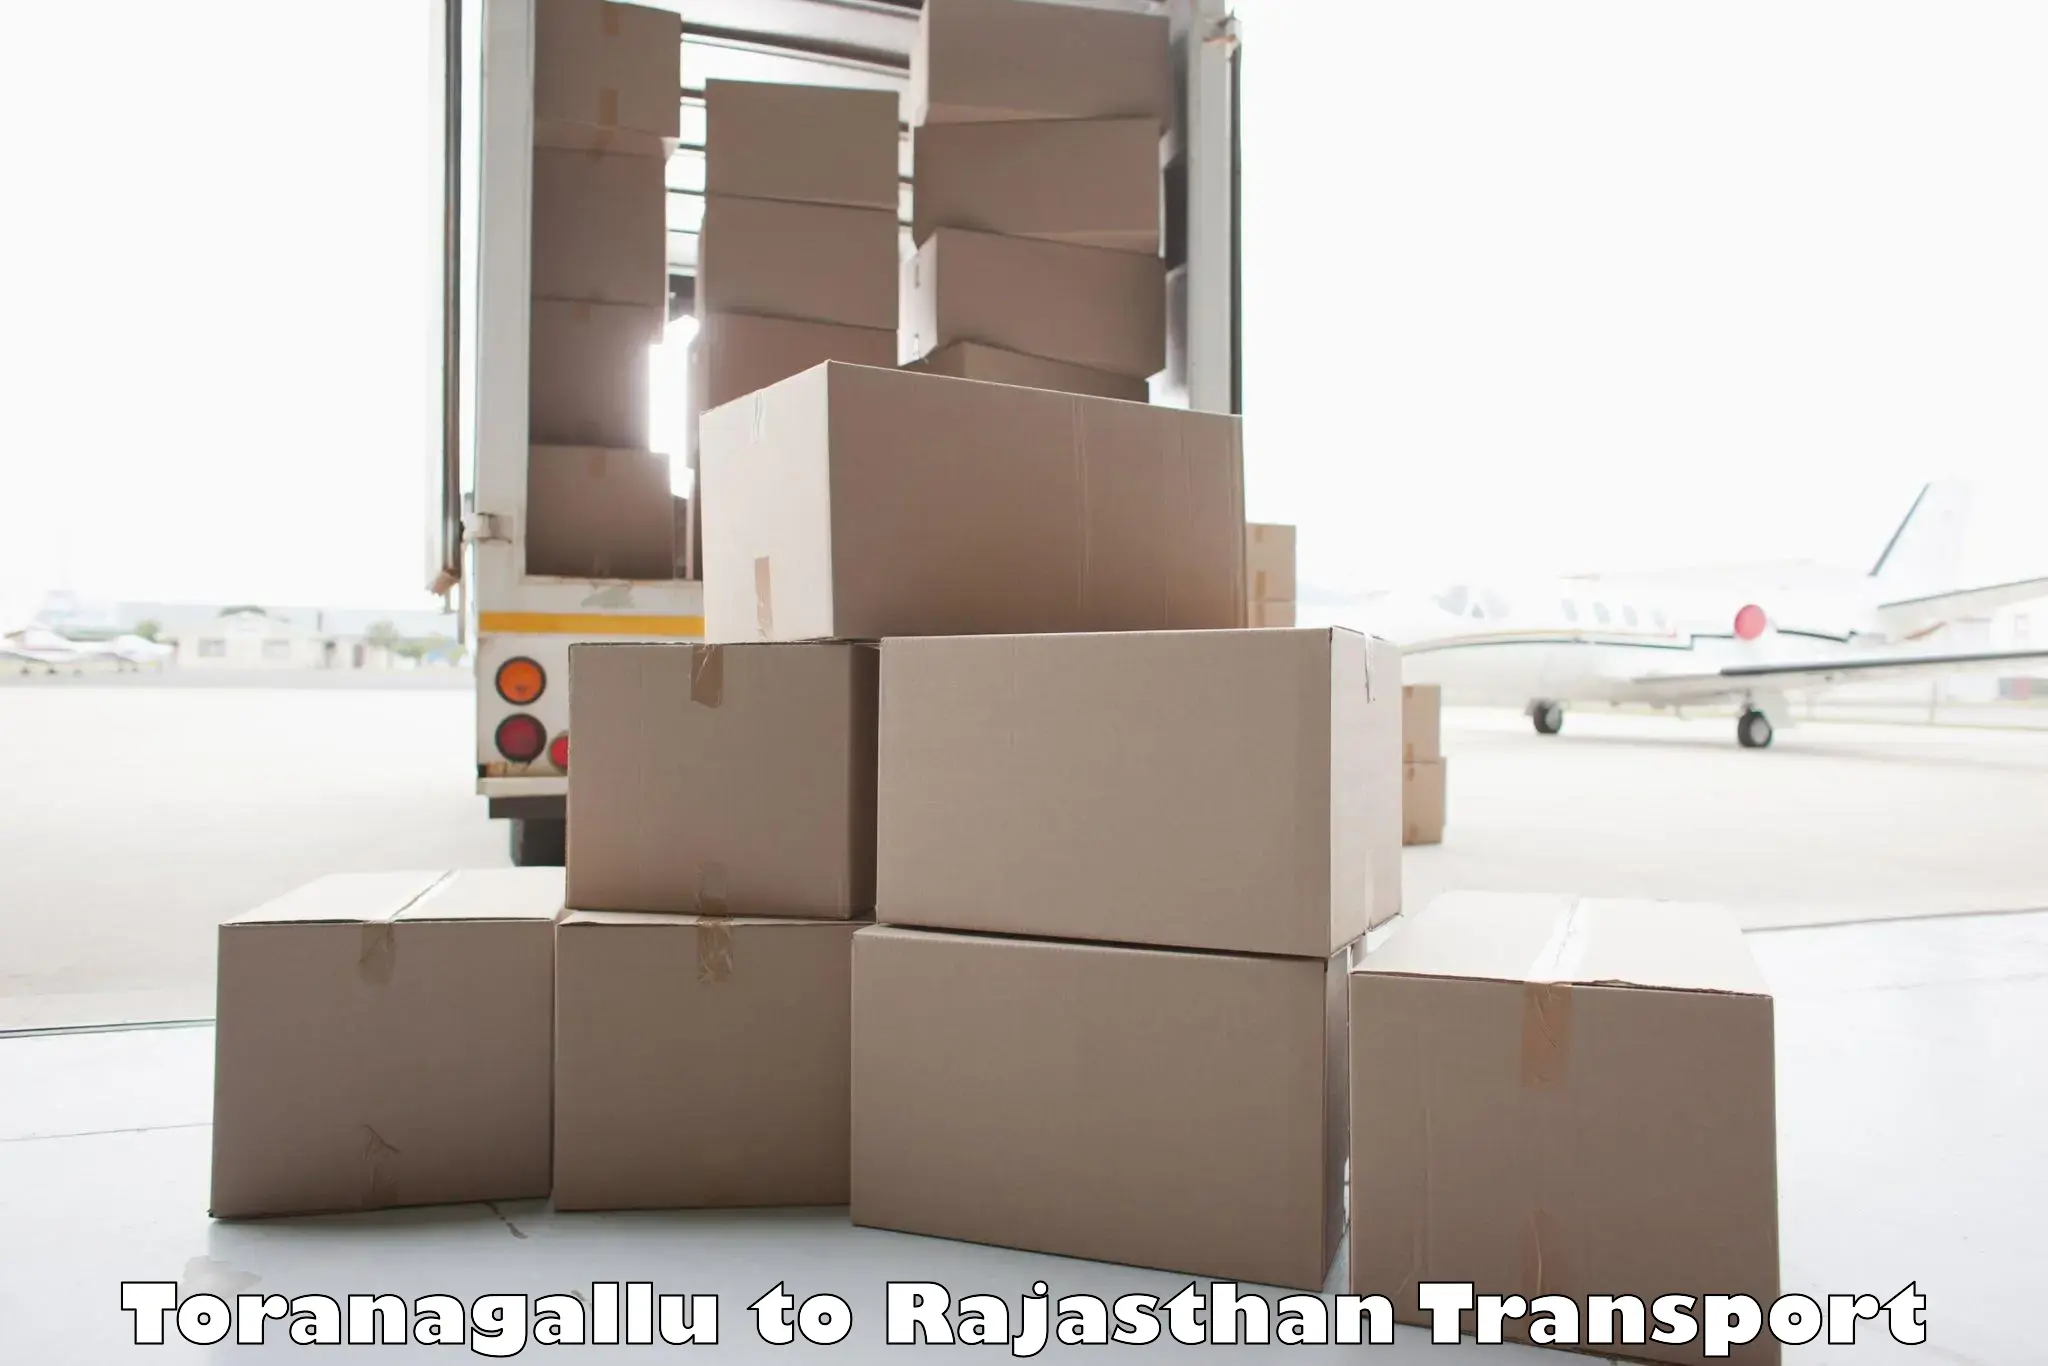 Cargo train transport services Toranagallu to Bari Dholpur